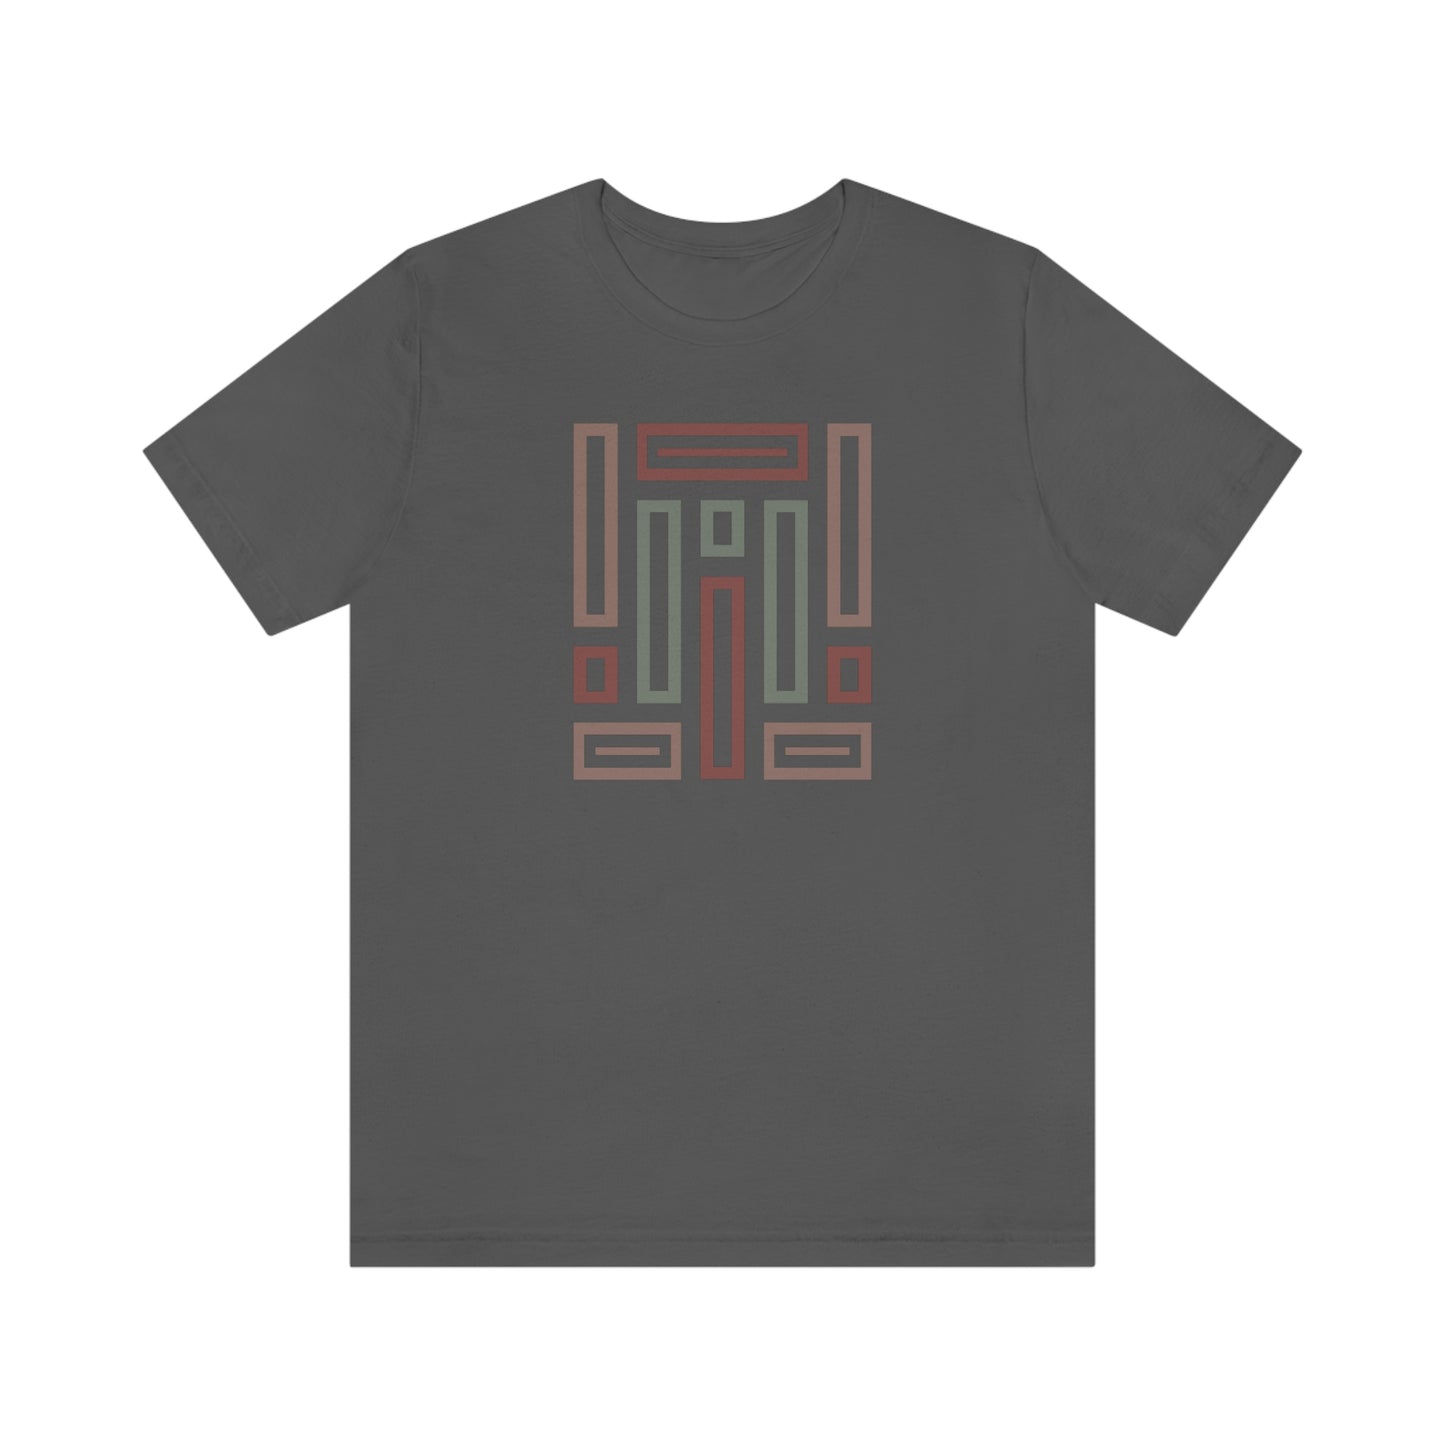 Open Rectangles - Unisex T-Shirt